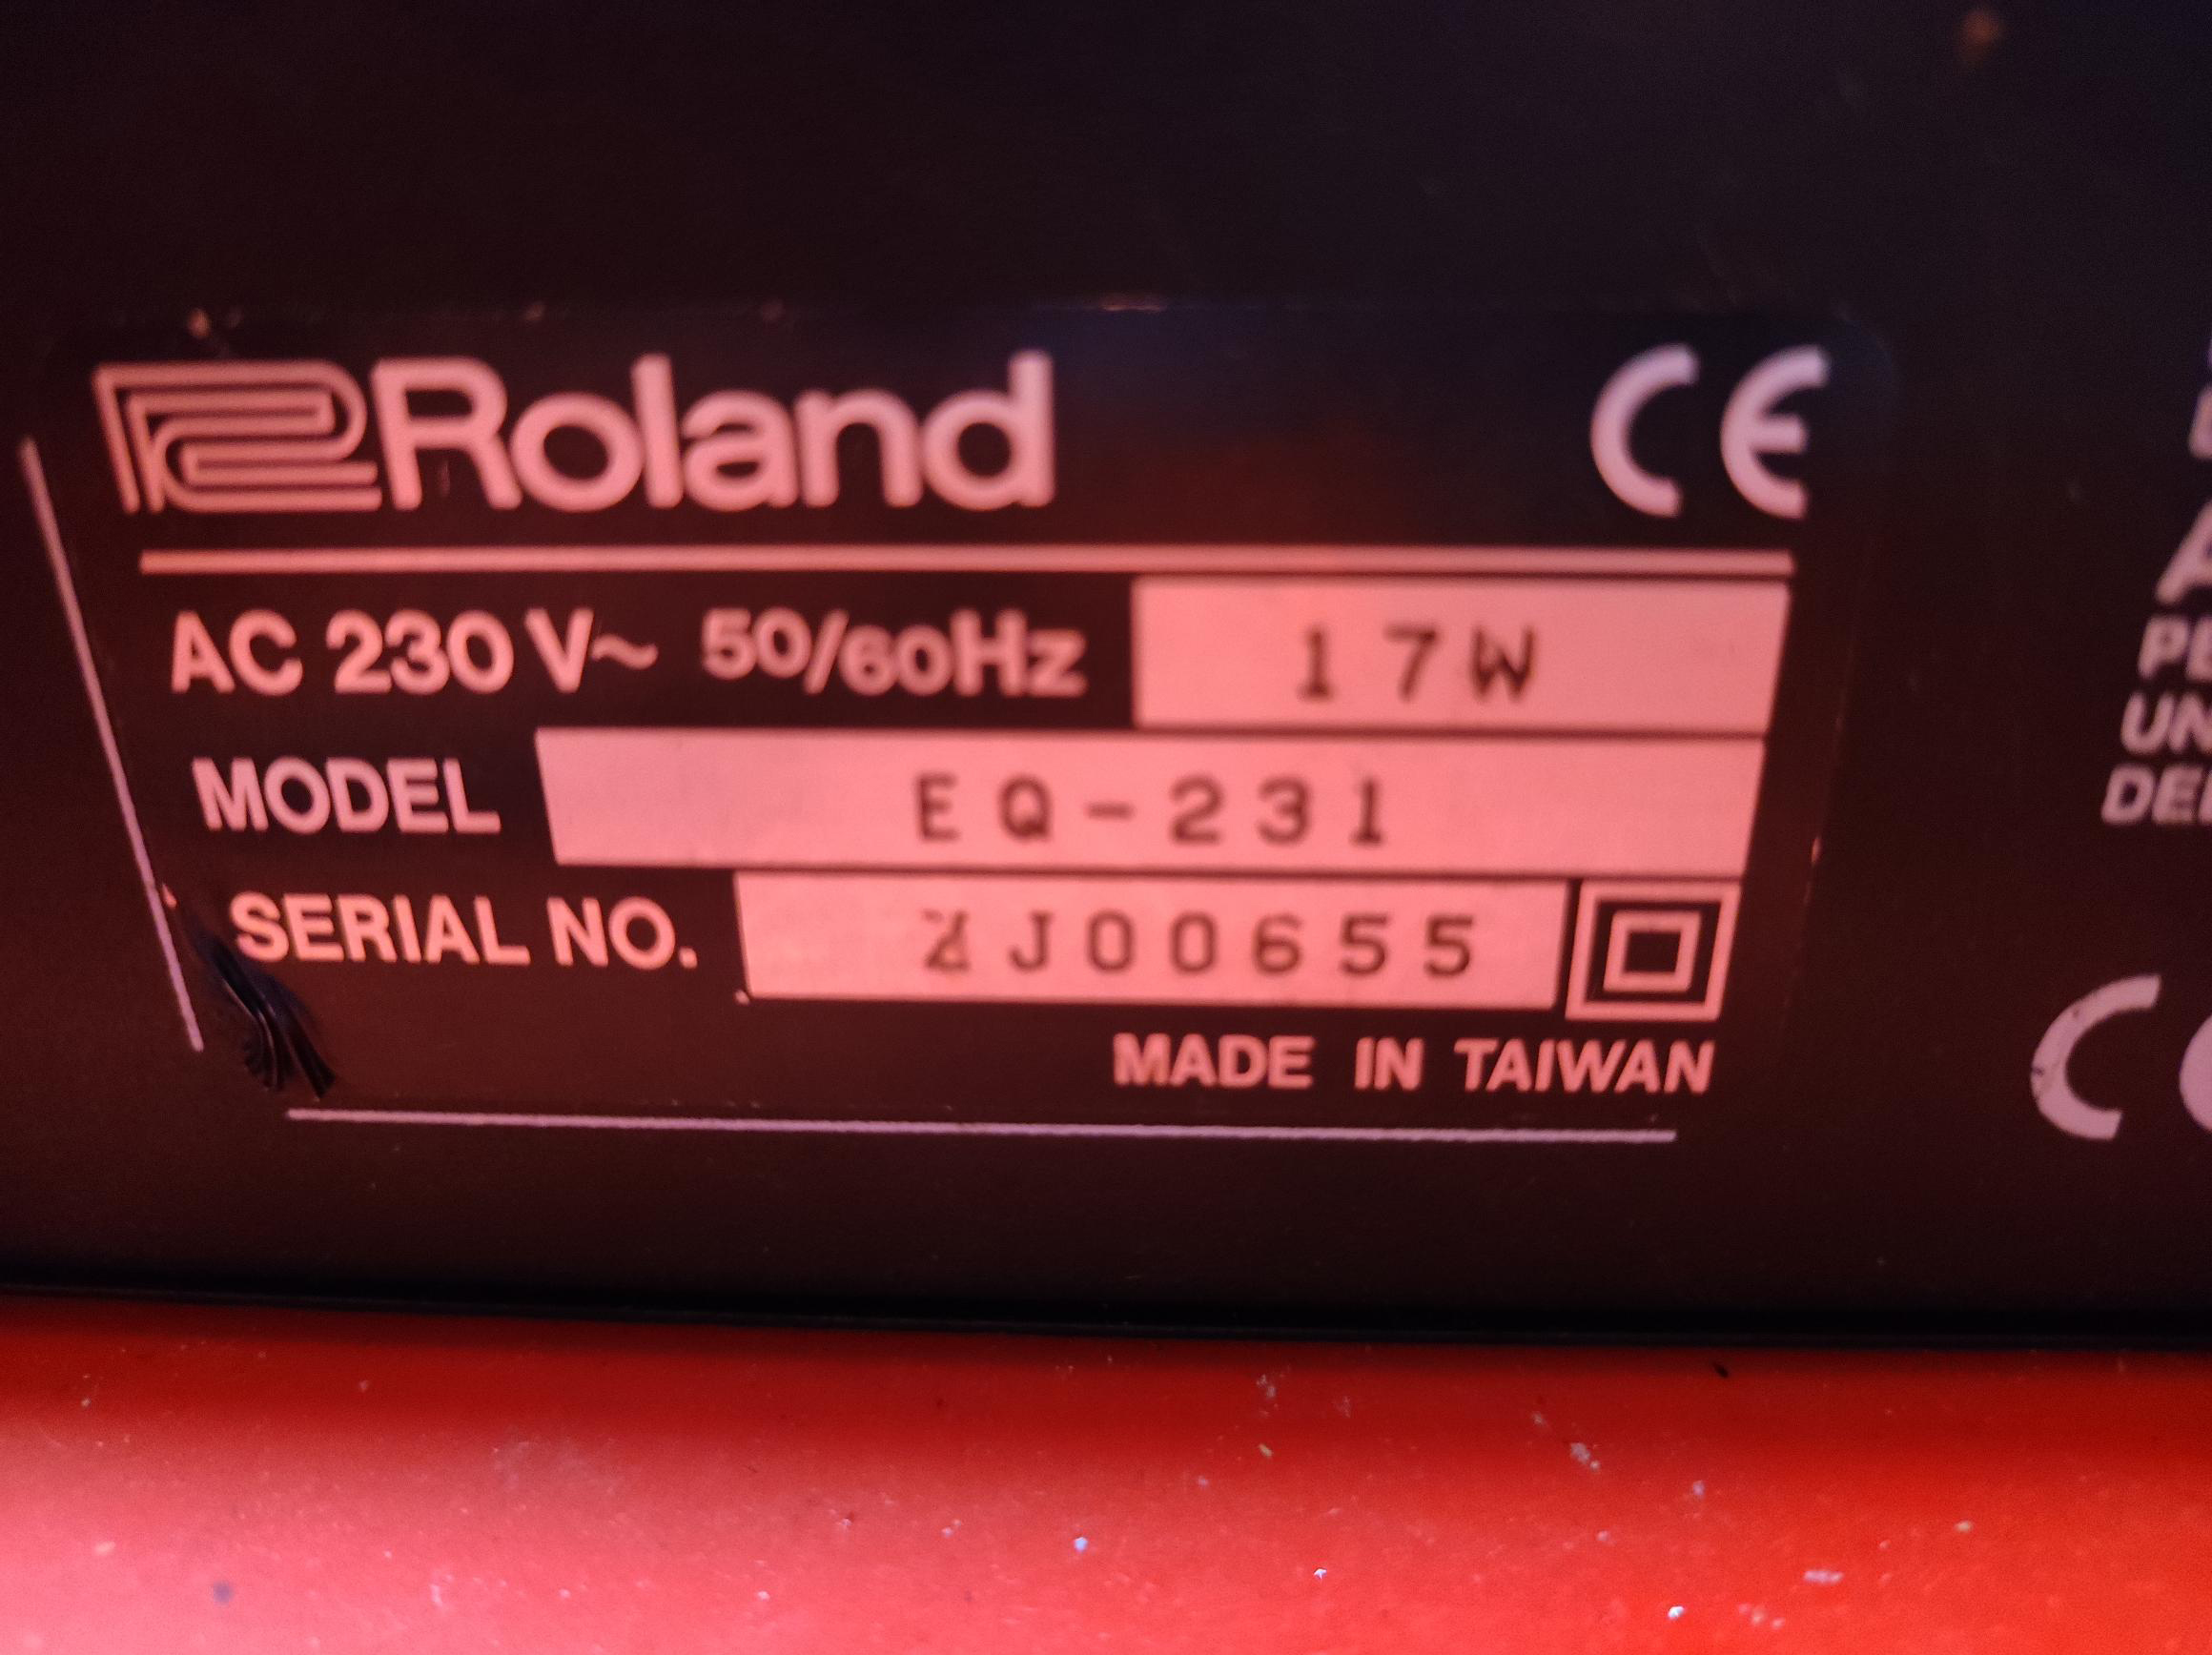 EQ-231 - Roland EQ-231 - Audiofanzine